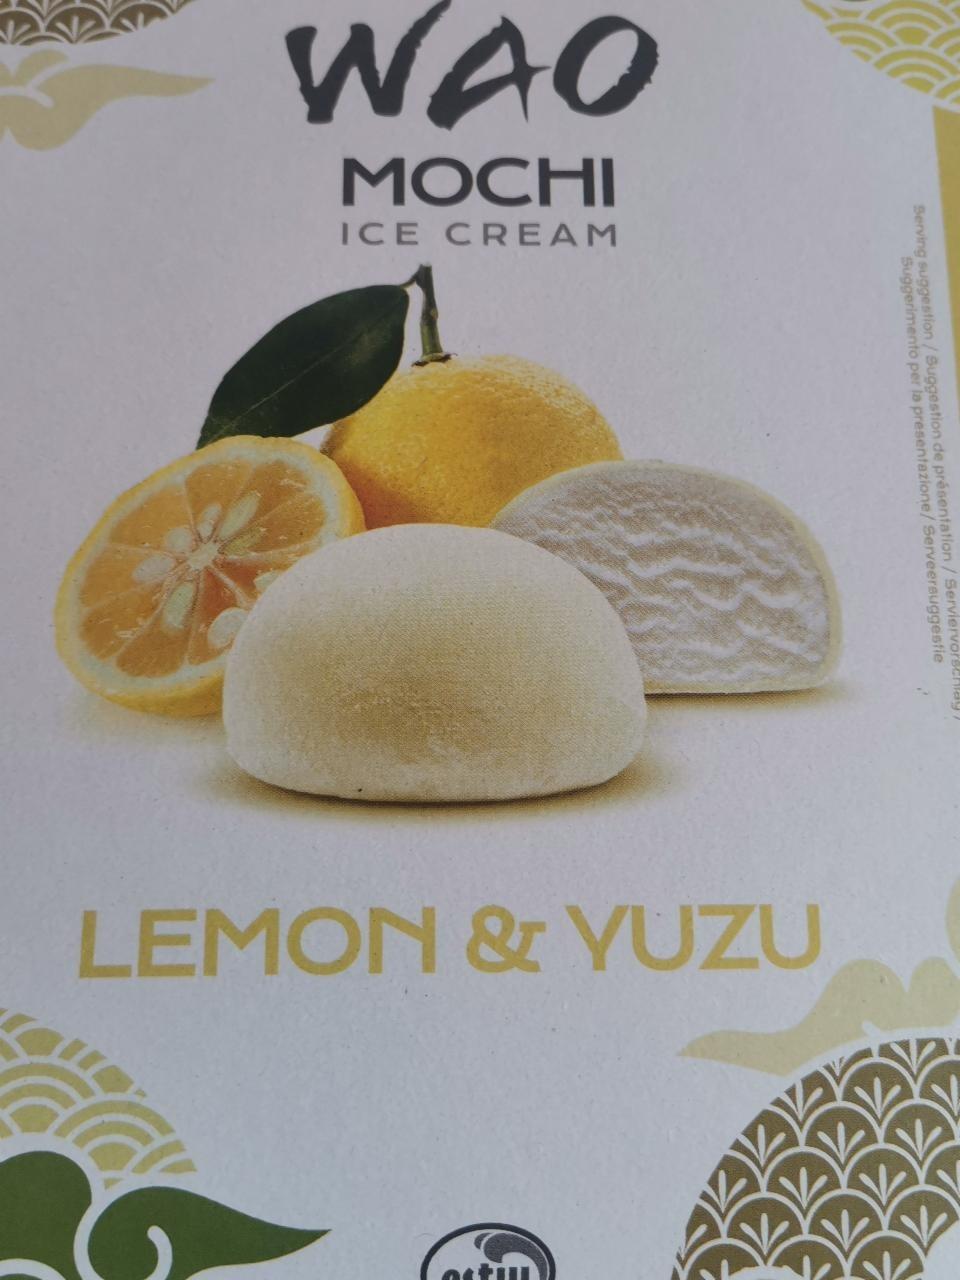 Fotografie - Wao mochi ice cream Lemon Yuzu